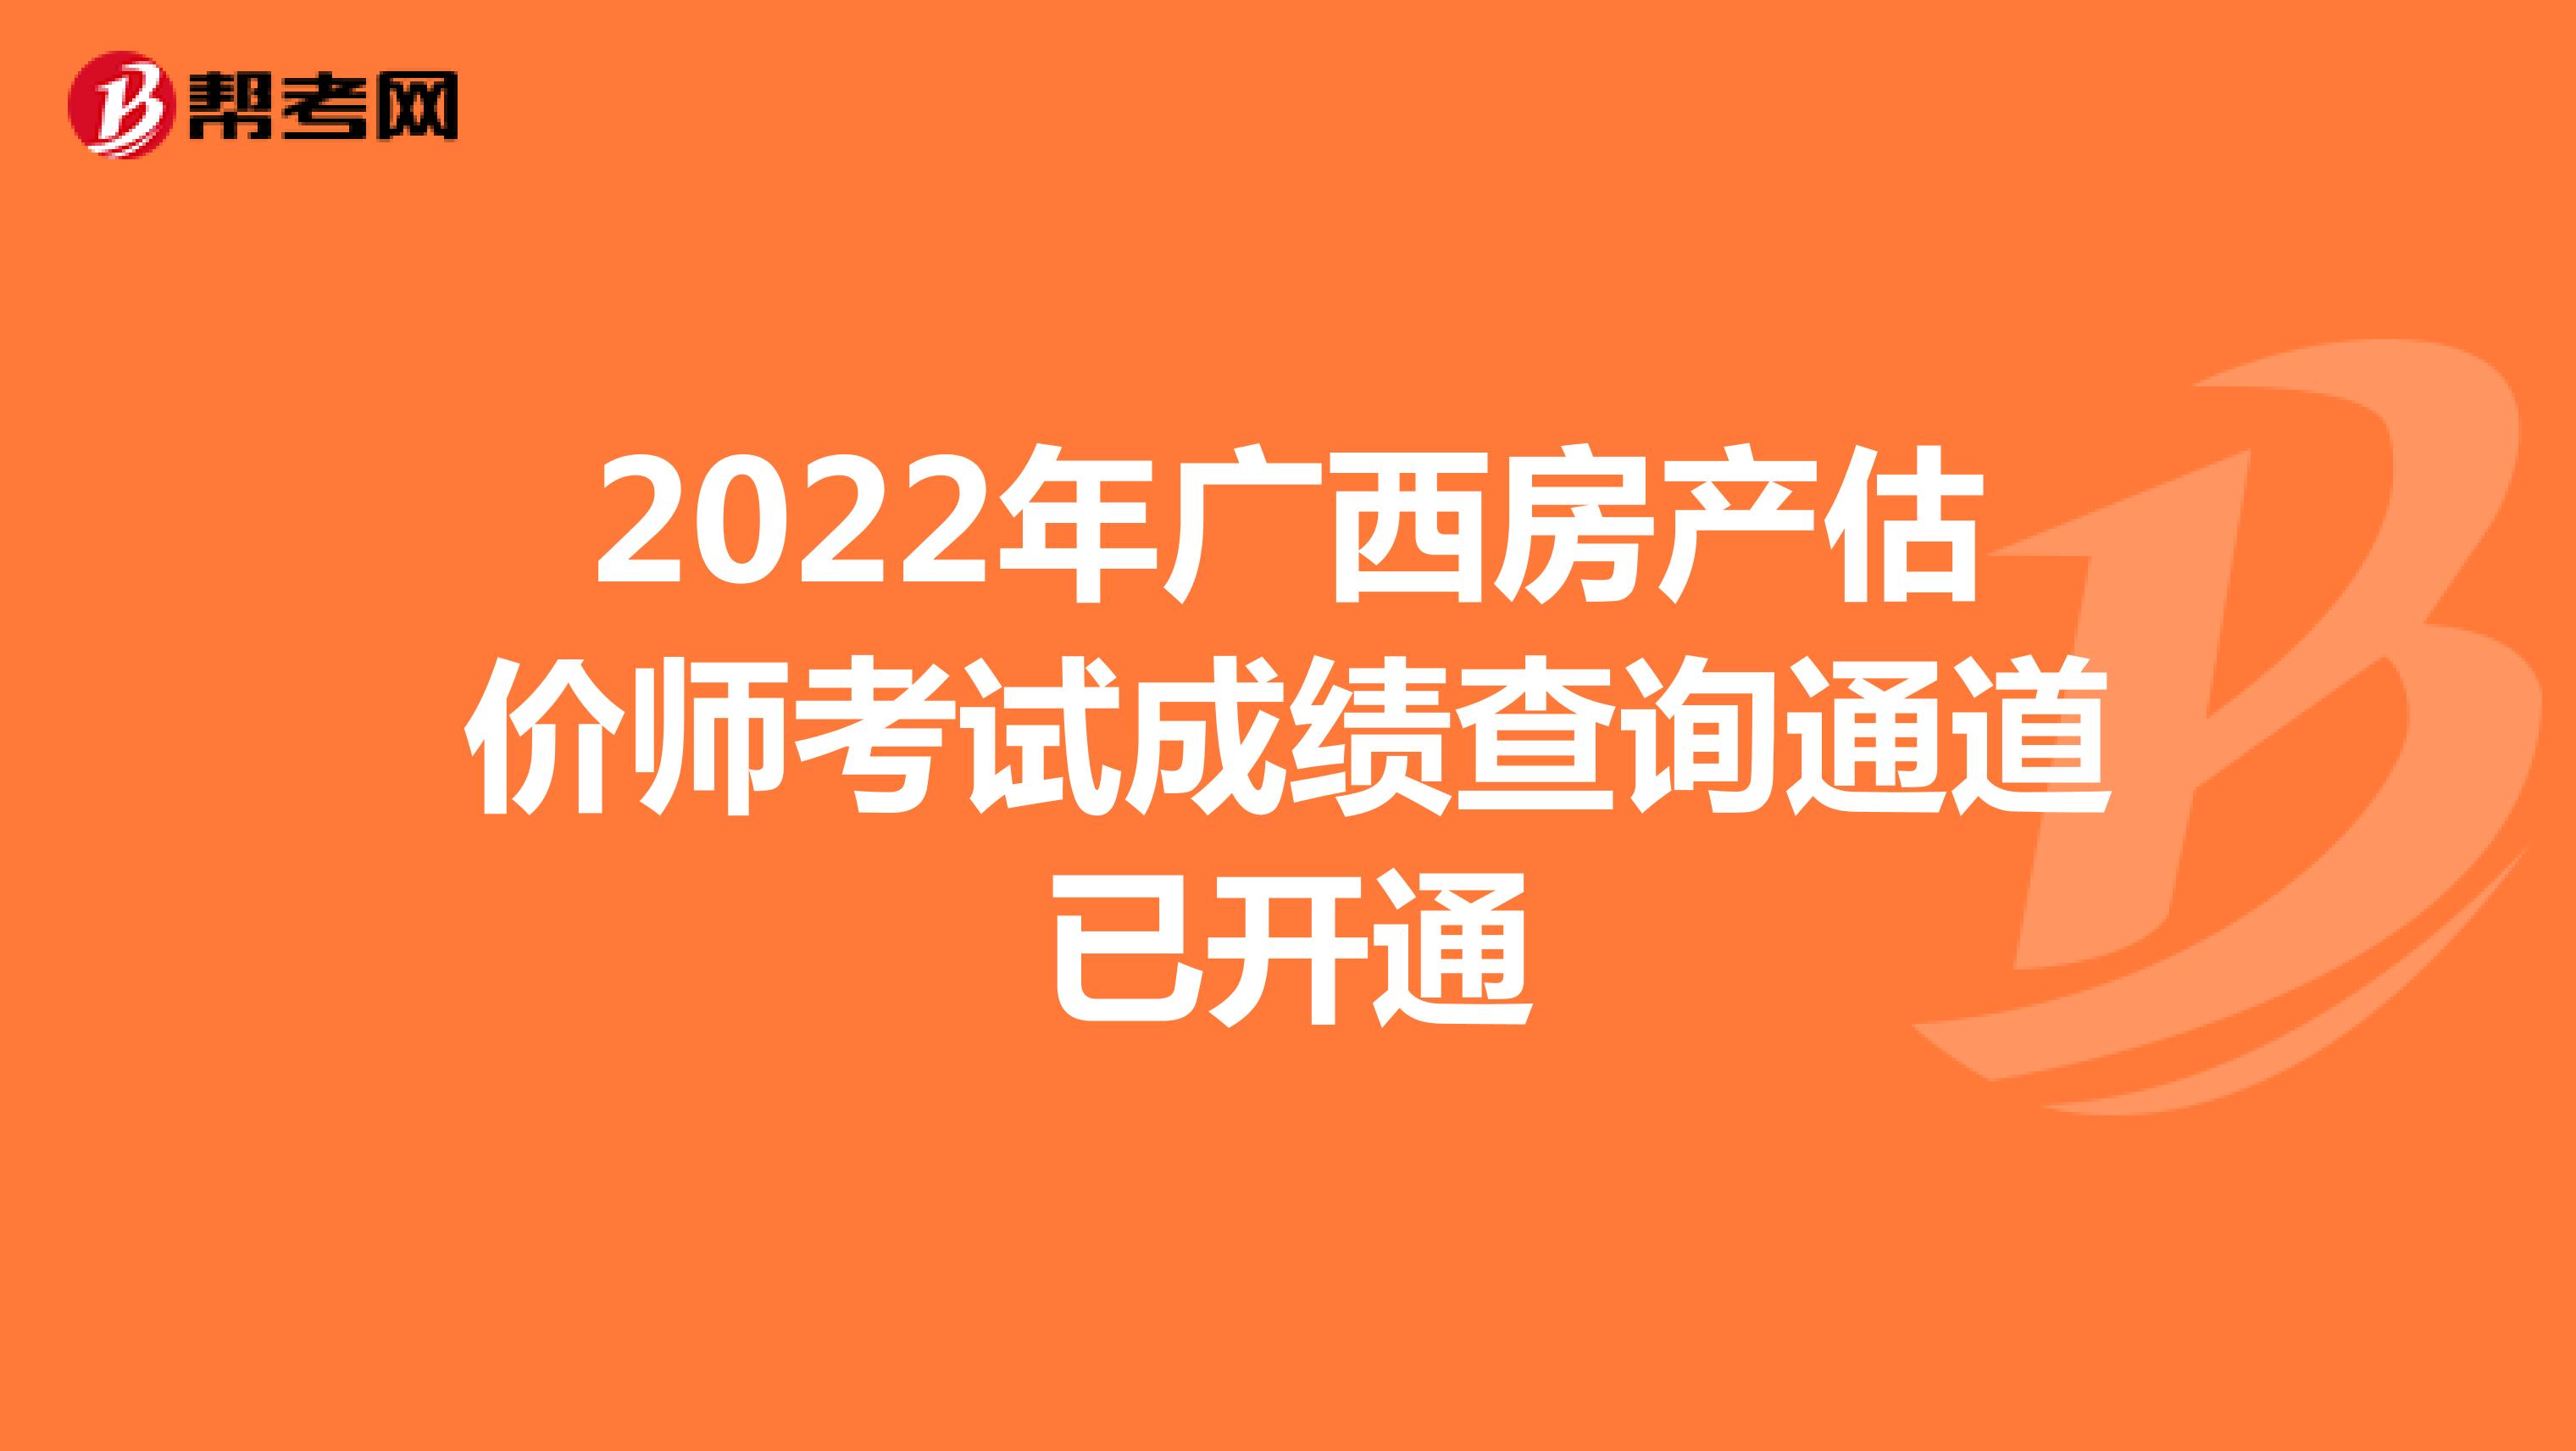 2022年广西房产估价师考试成绩查询通道已开通